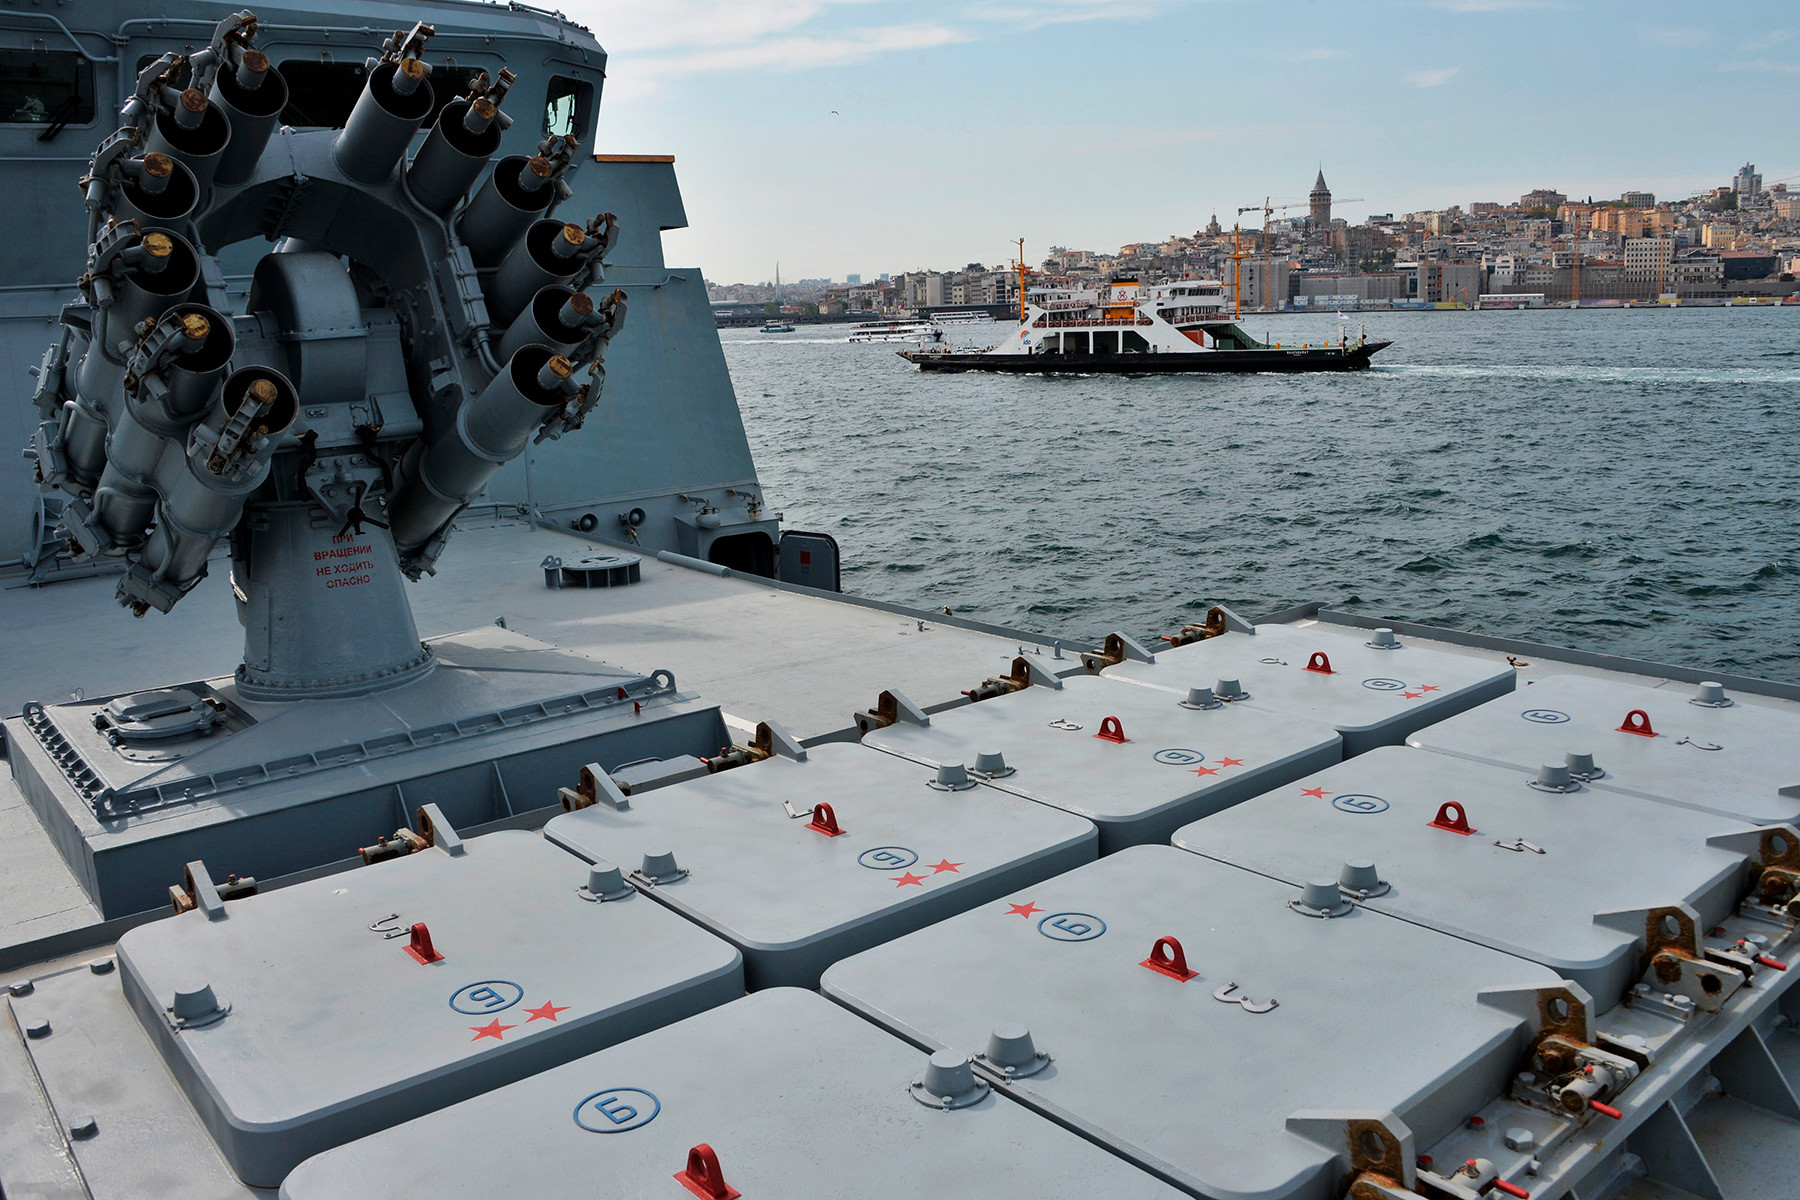 イスタンブールで行われた国際軍事産業展覧会 IDEF-2019で紹介された巡航ミサイル「カリブル」のロケットランチャーと対潜迫撃砲RBU-6000 スメルチ-2。1136型警備艦「アドミラル・エッセン」に掲載されている。